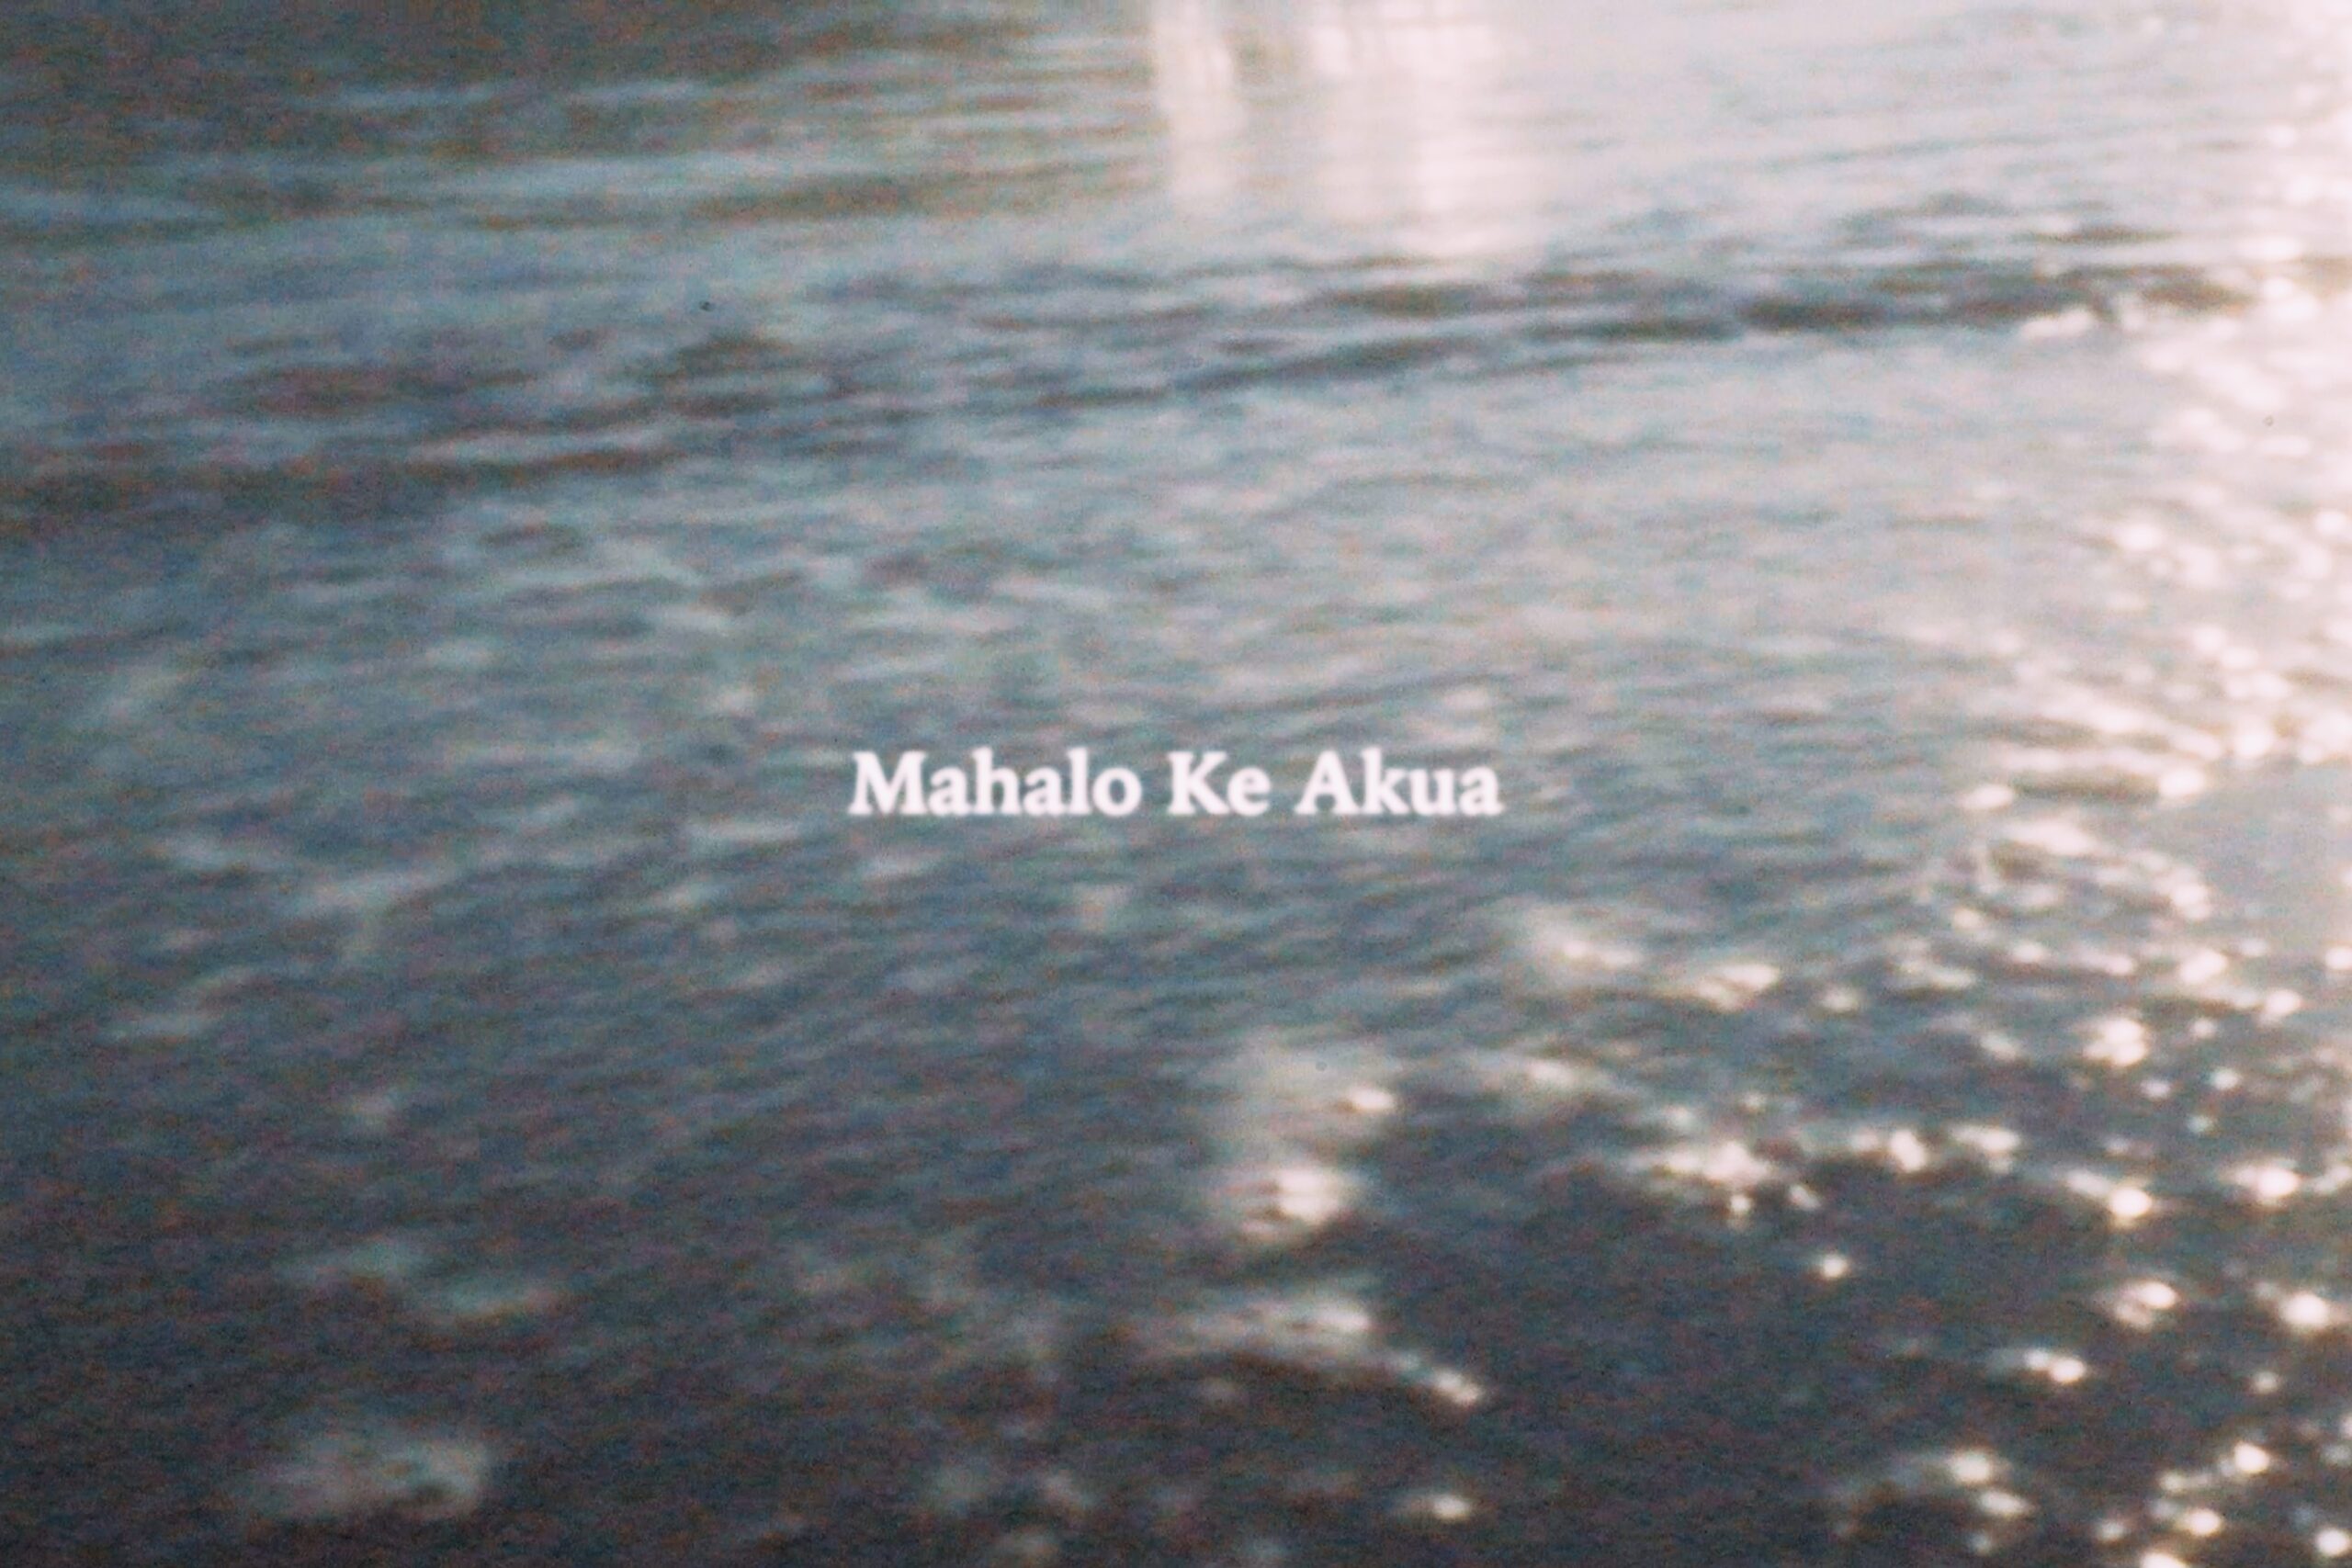 『Mahalo Ke Akua 』music video